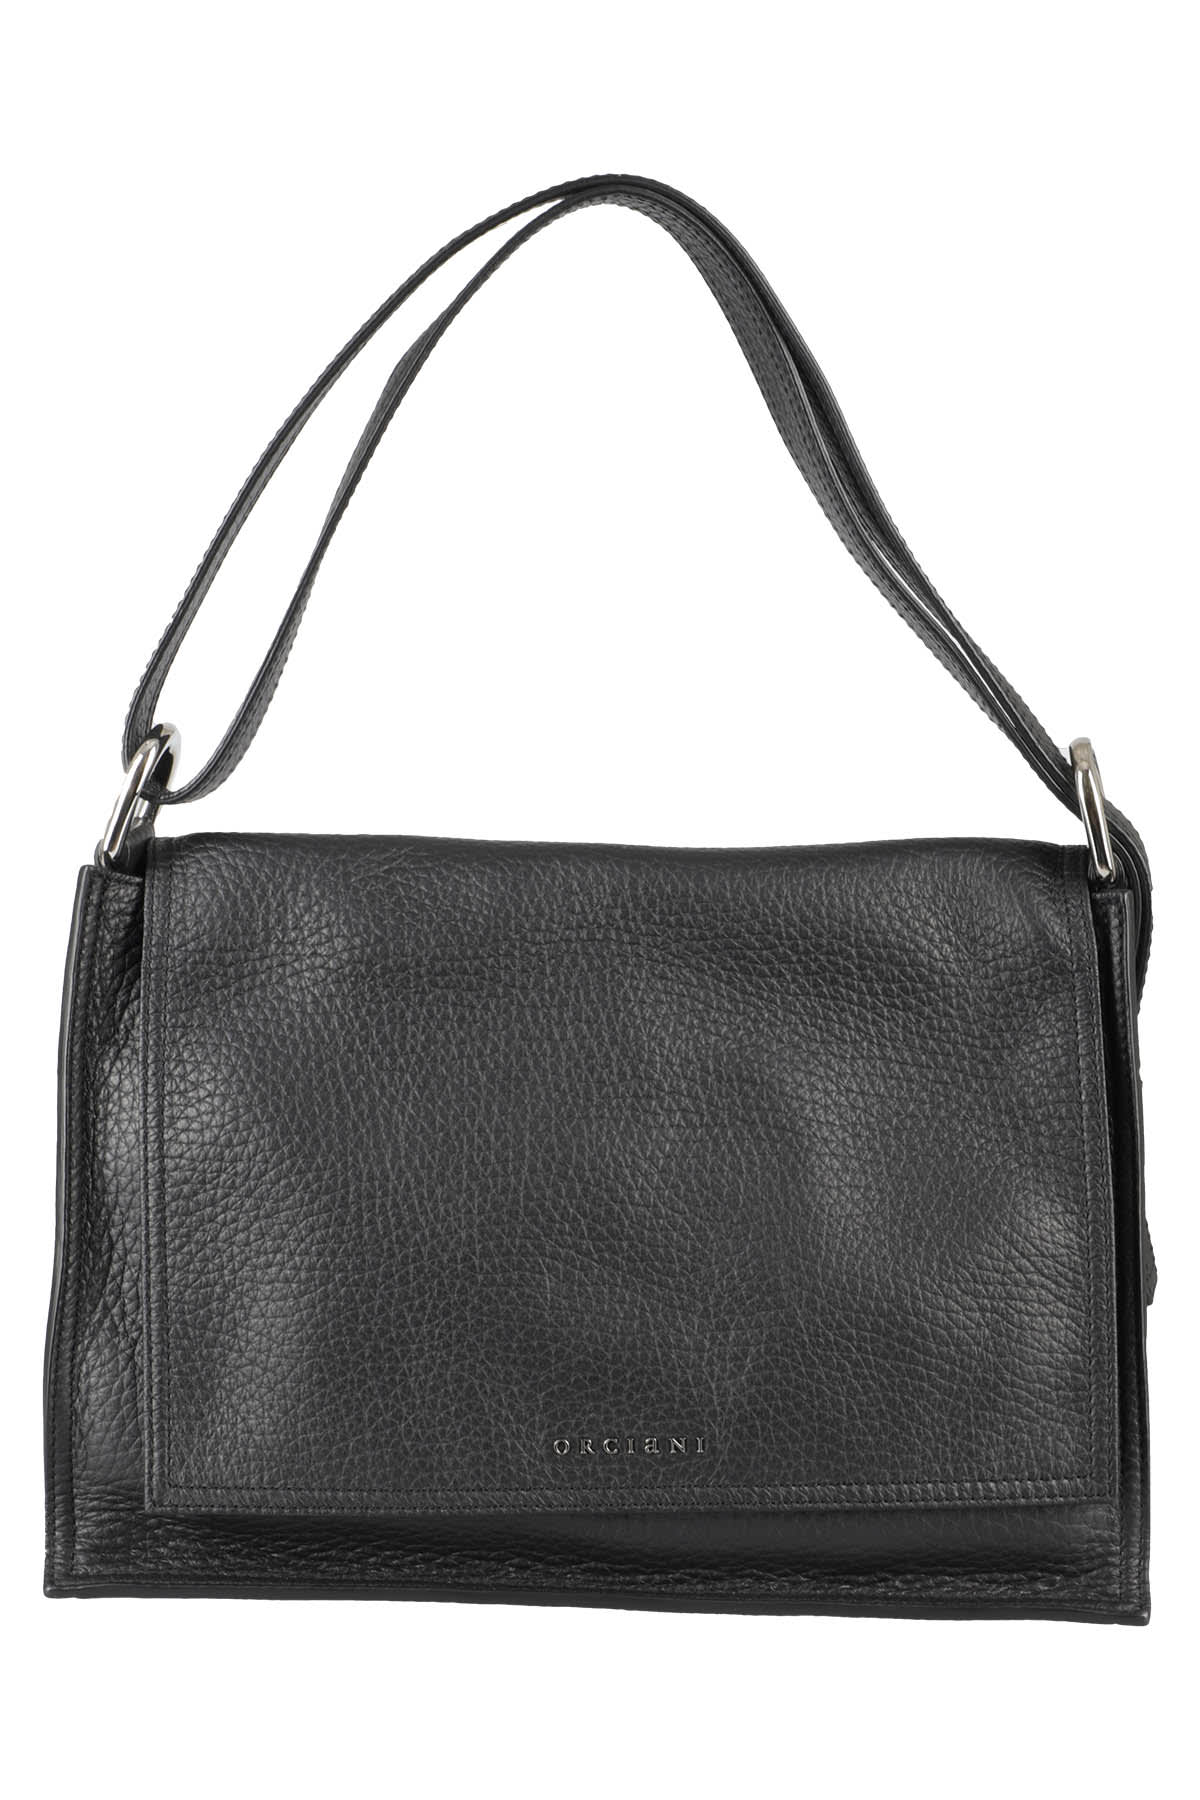 ORCIANI Pong Soft leather shoulder bag with shoulder strap, color Ivory